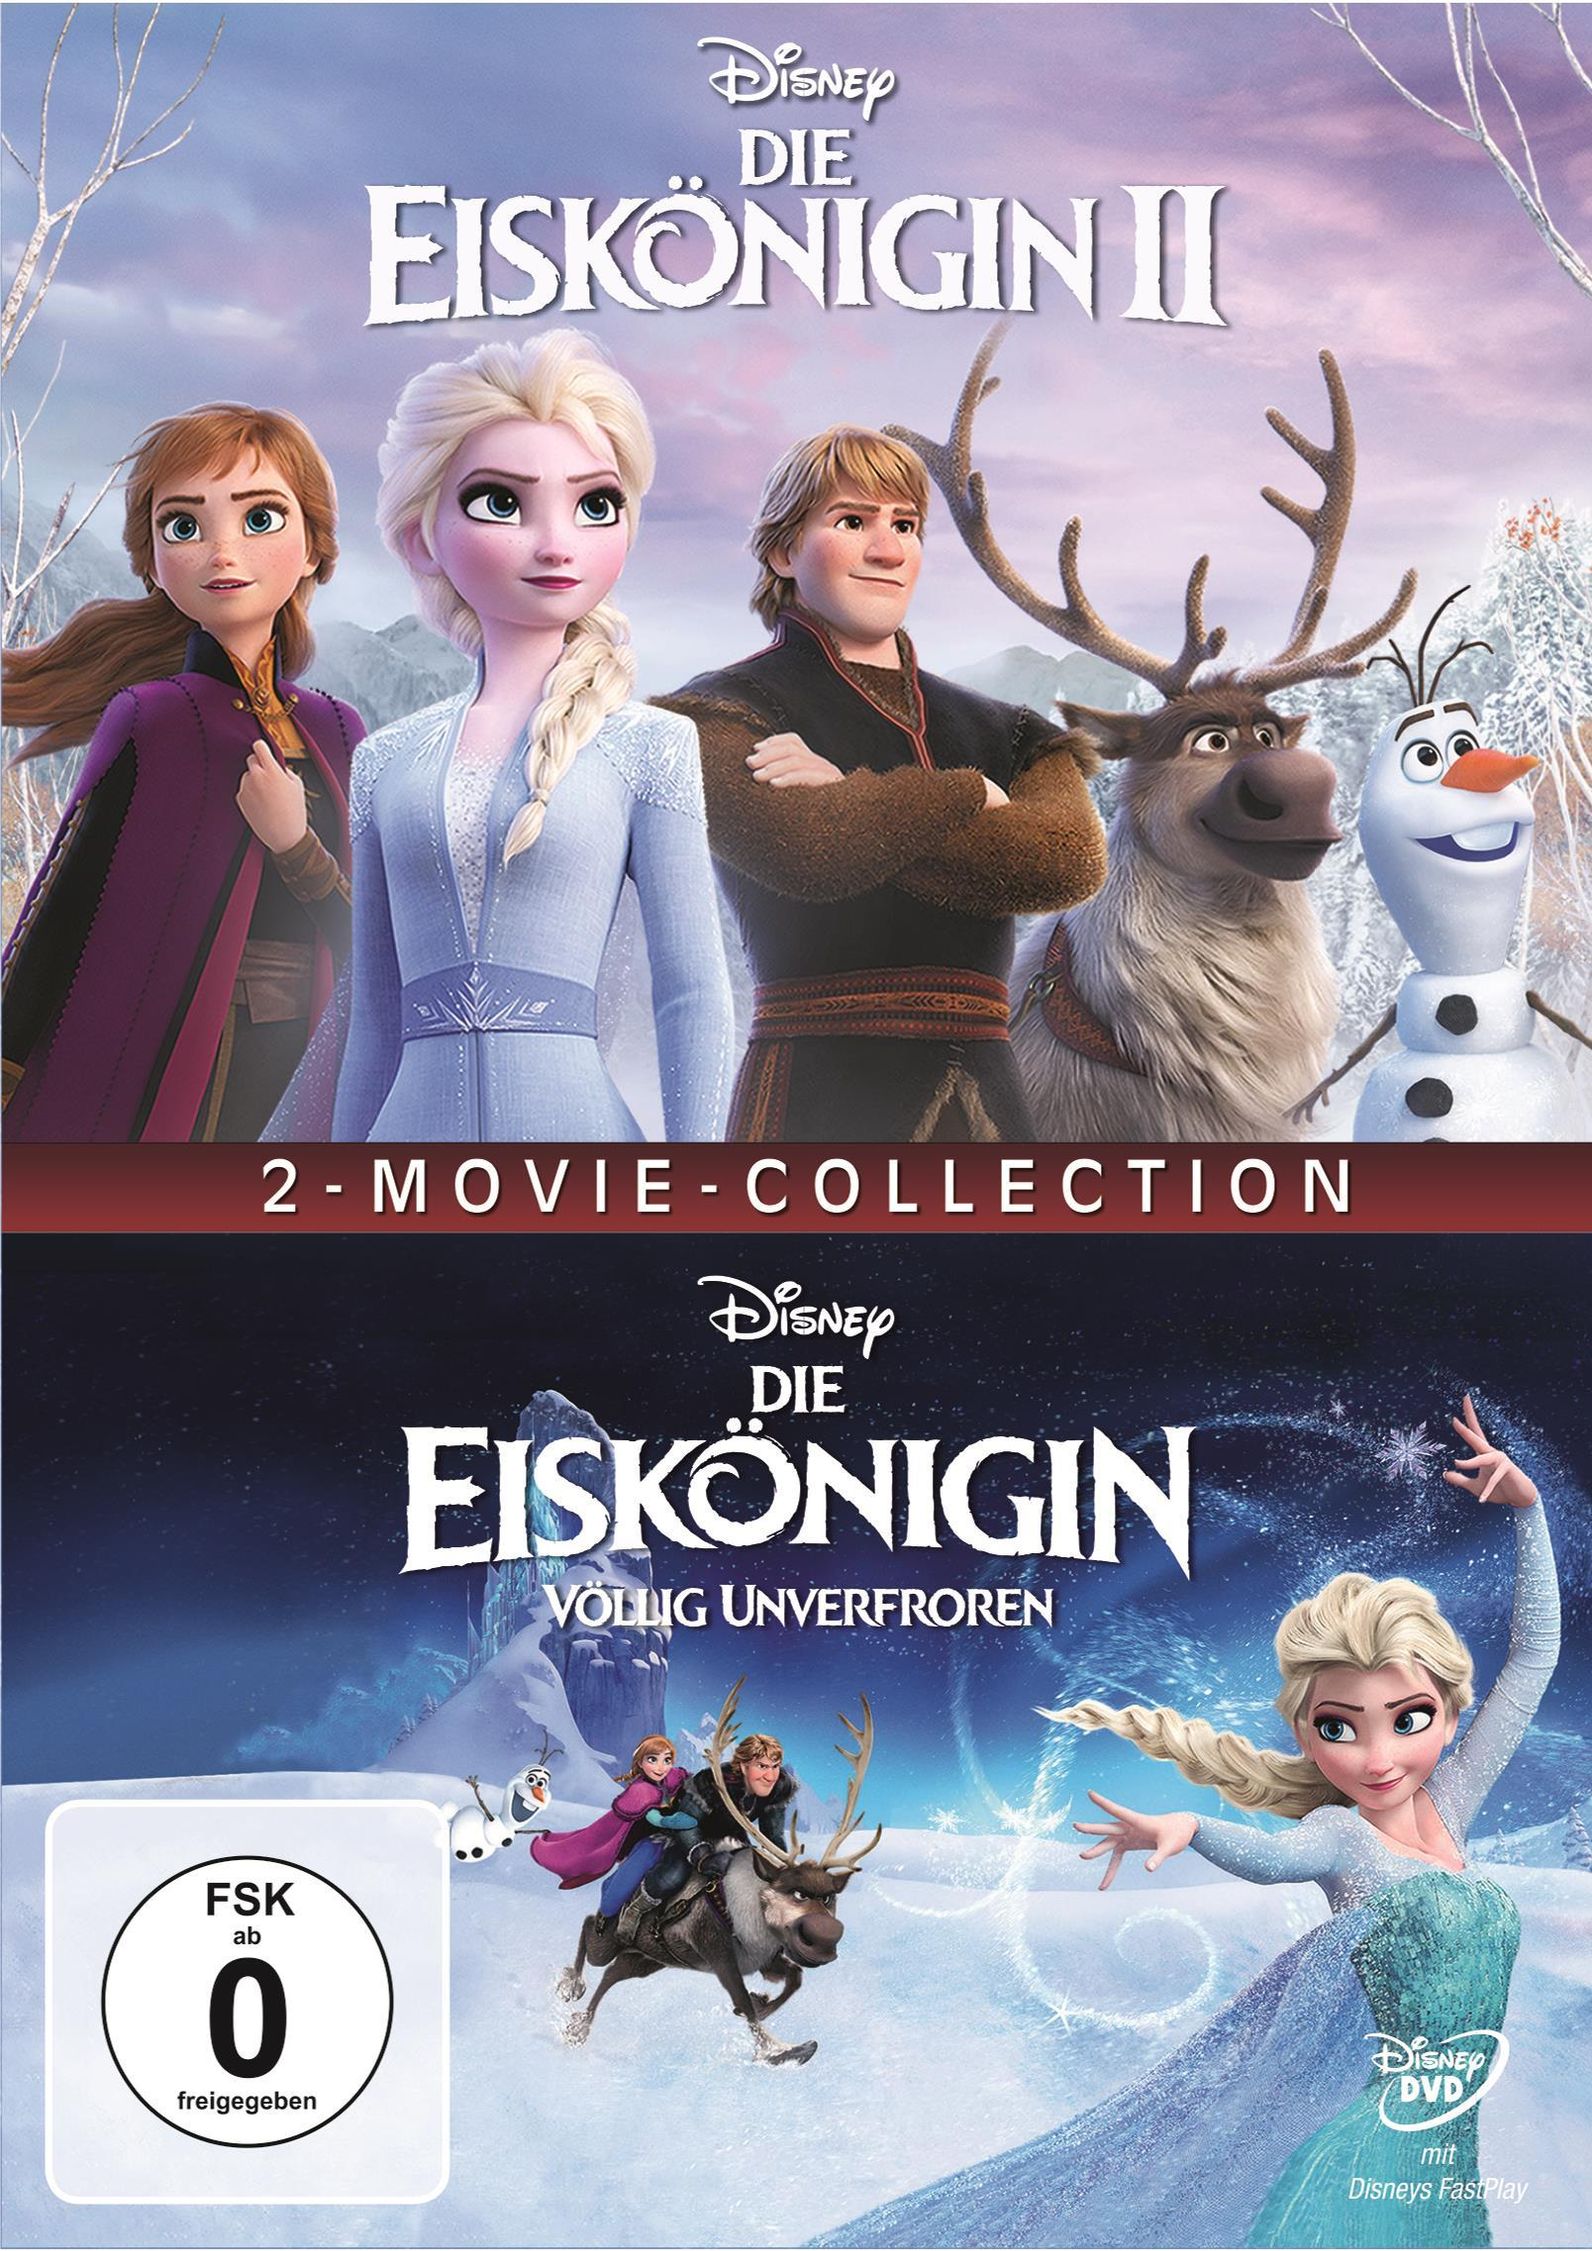 Die Eiskönigin 1 & 2 DVD jetzt bei Weltbild.at online bestellen